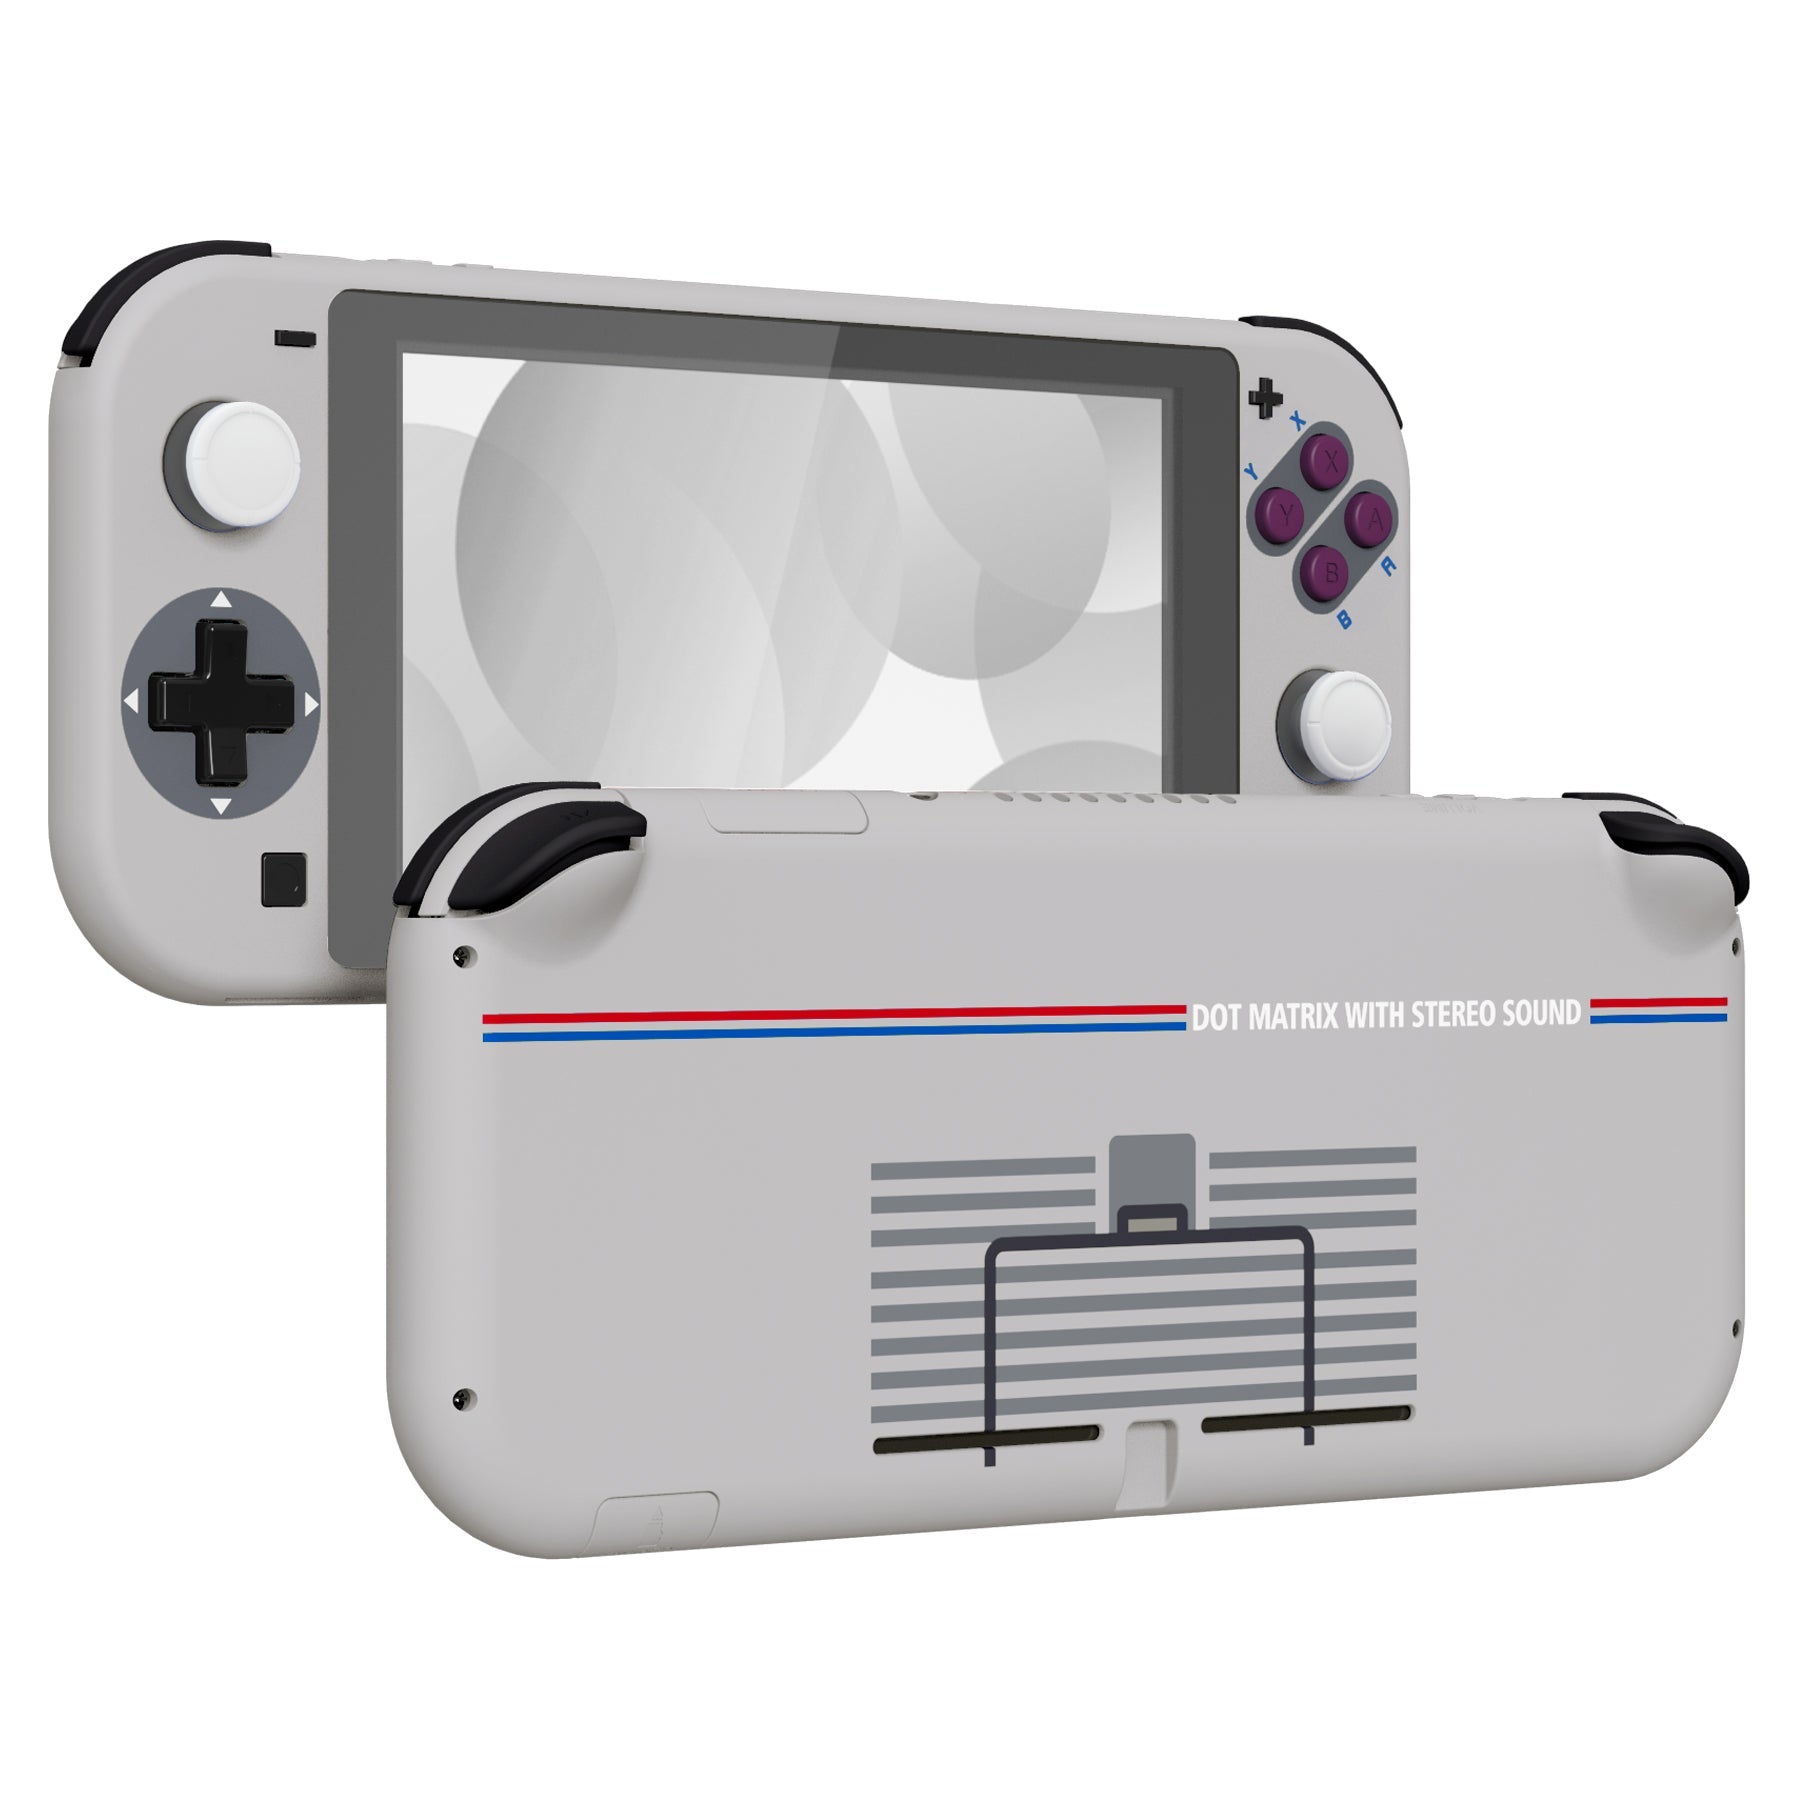 HS - CONSOLE Nintendo Switch Lite - Ne Fonctionne Pas - A Réparer